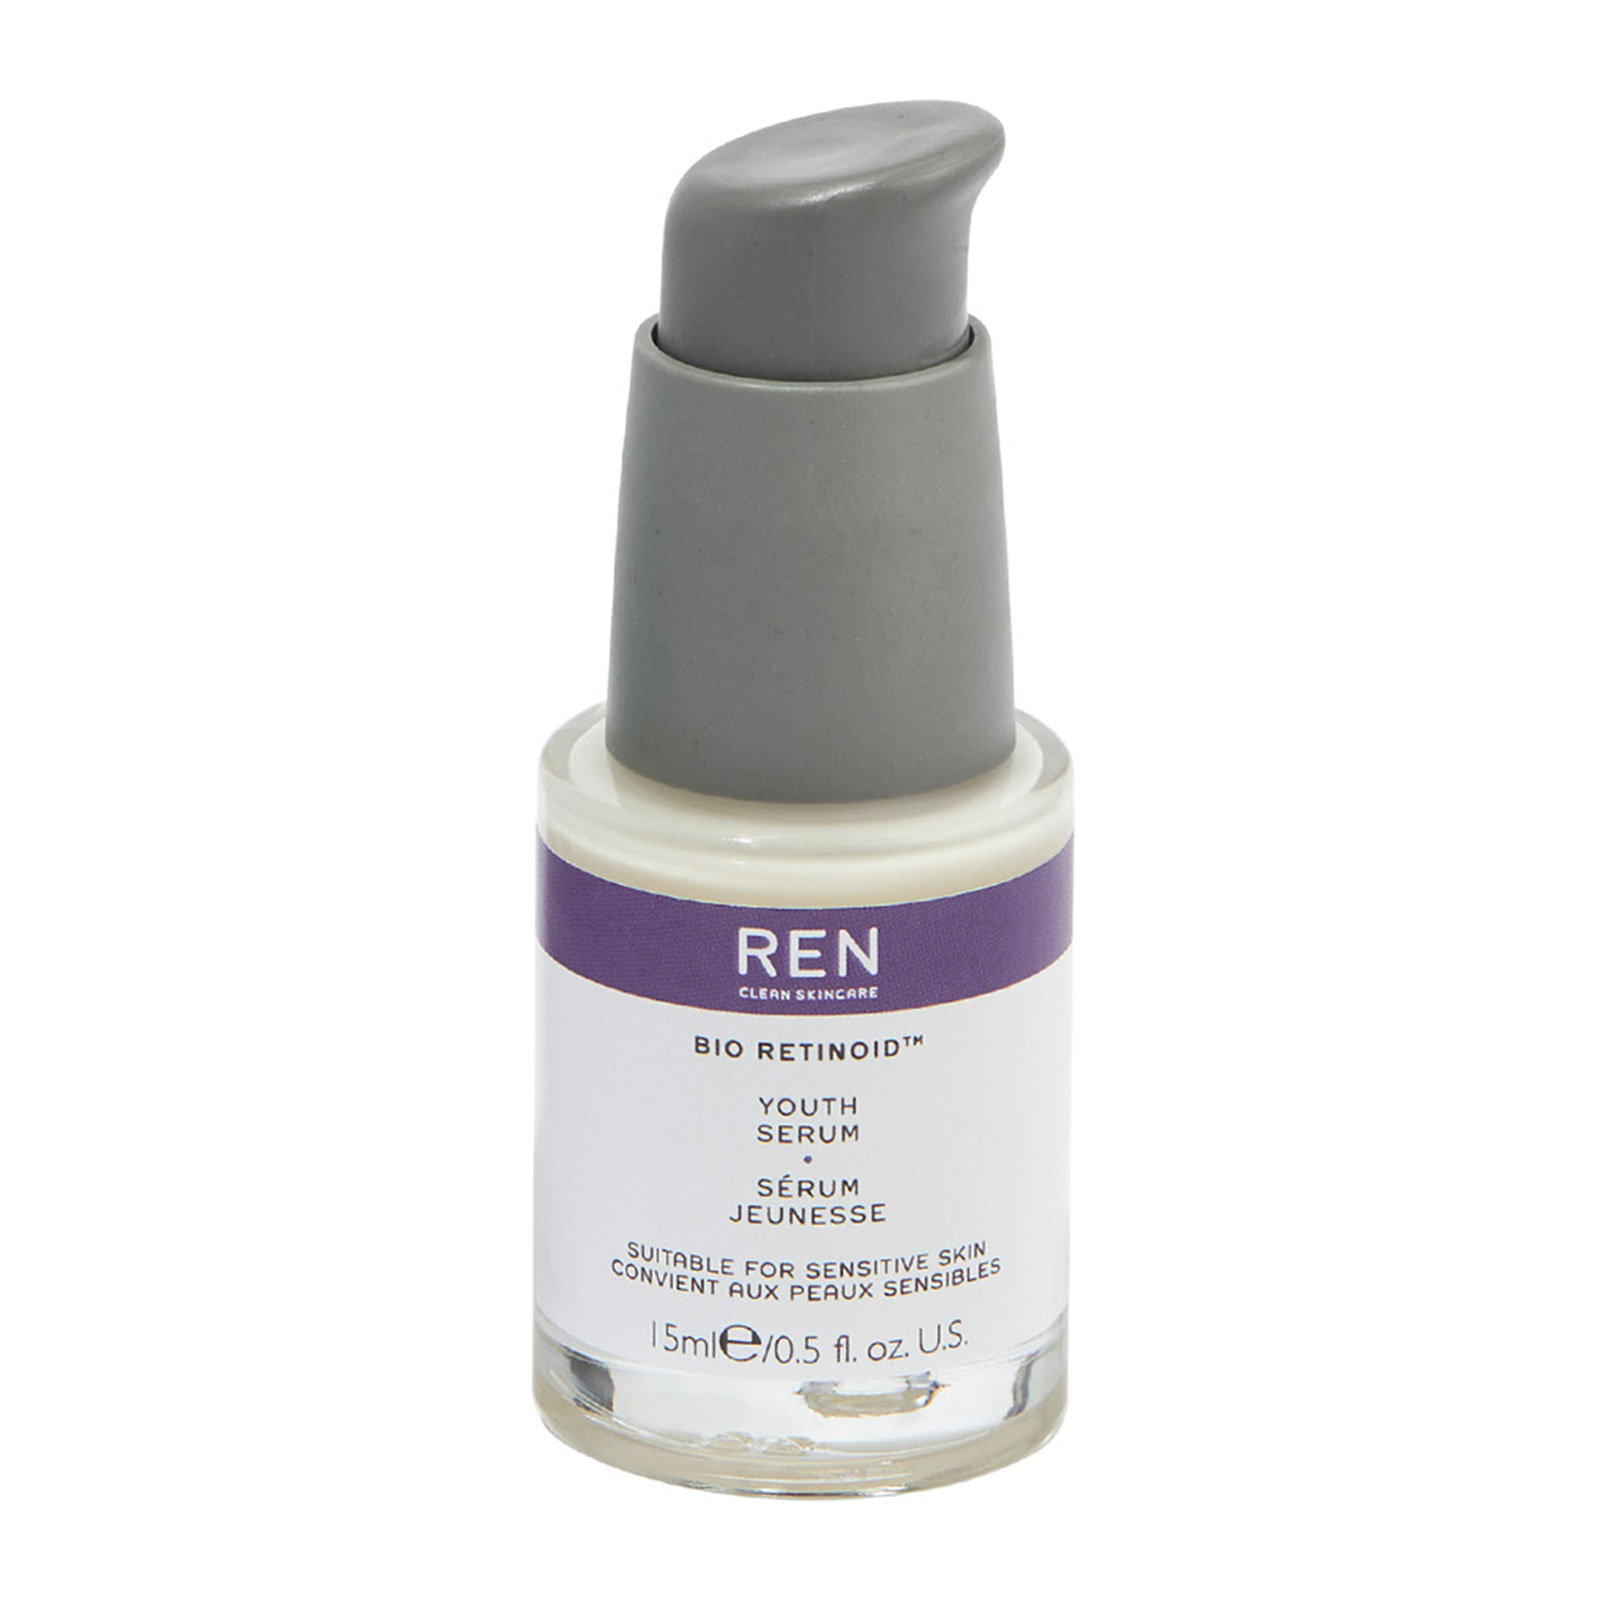 REN Clean Skincare Bio Retinoid� Youth Serum 15ml